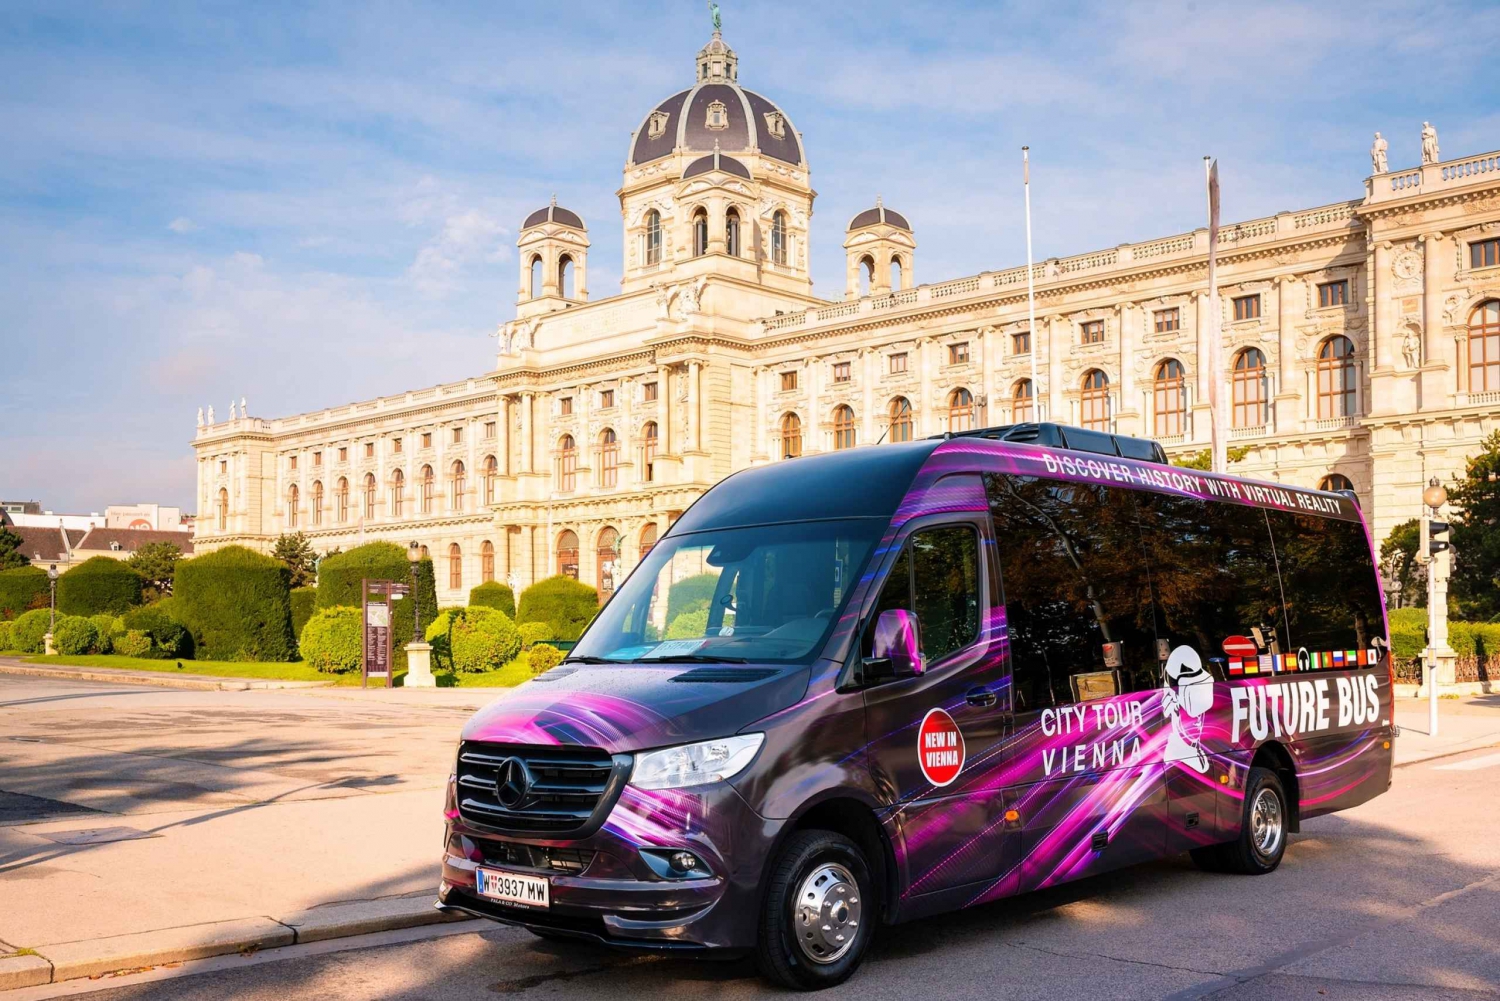 Vienne : visite en bus avec expérience de réalité virtuelle